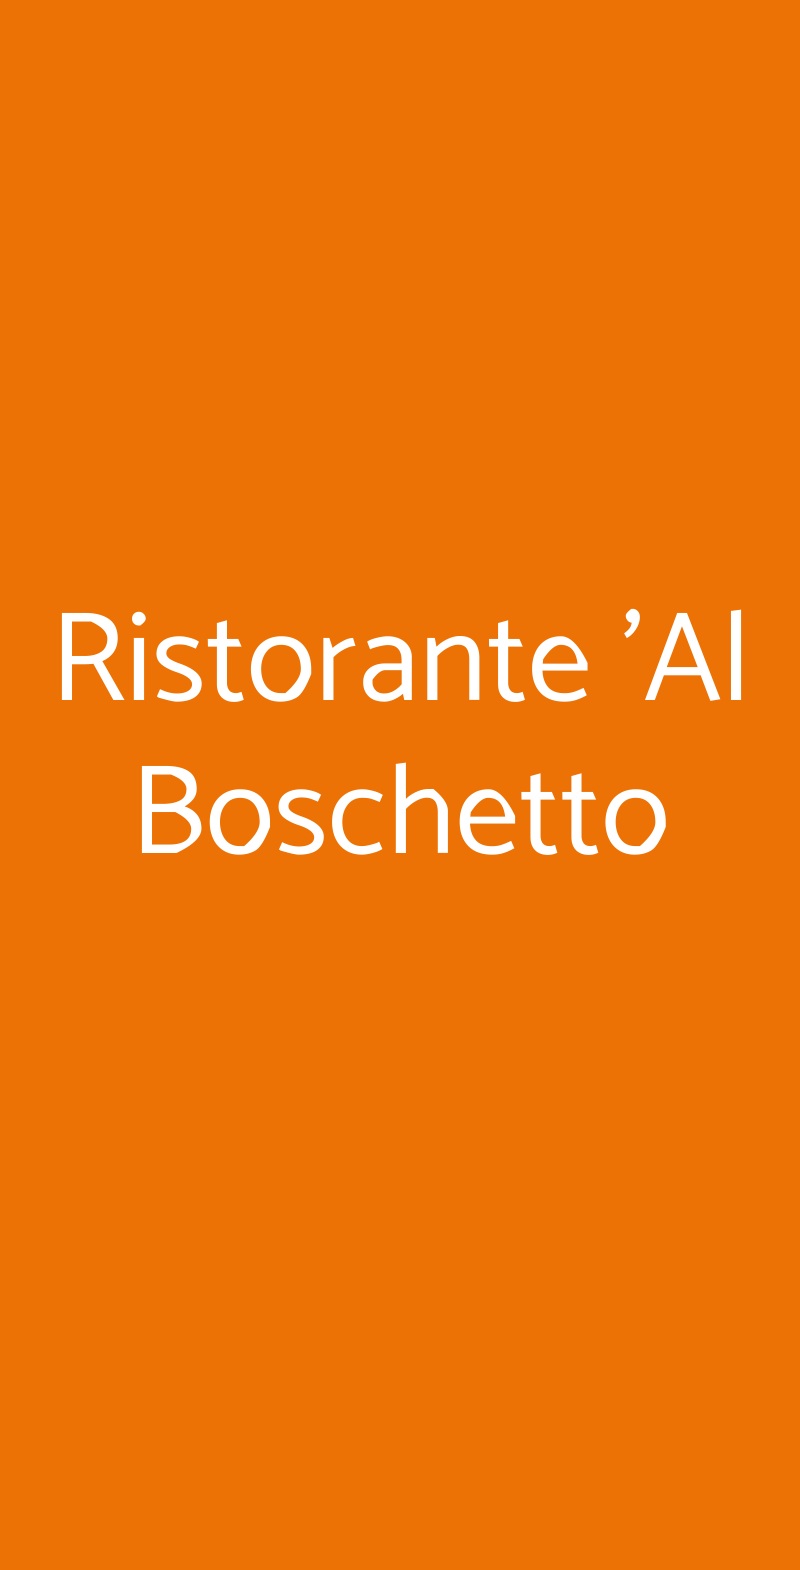 Ristorante 'Al Boschetto Modena menù 1 pagina